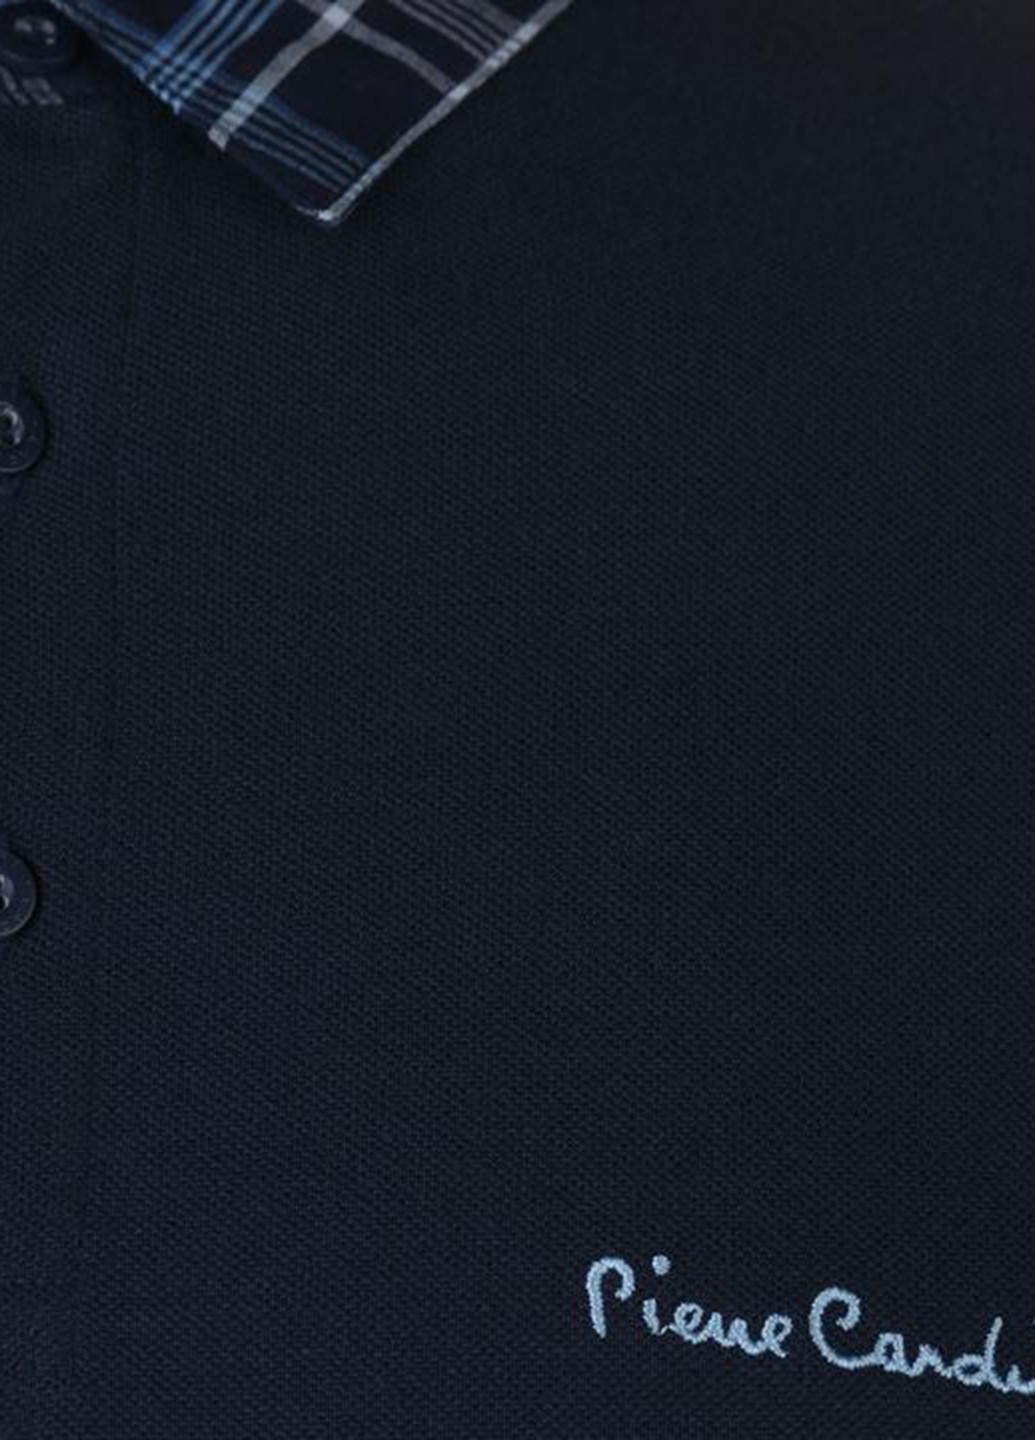 Темно-синяя футболка-поло для мужчин Pierre Cardin однотонная